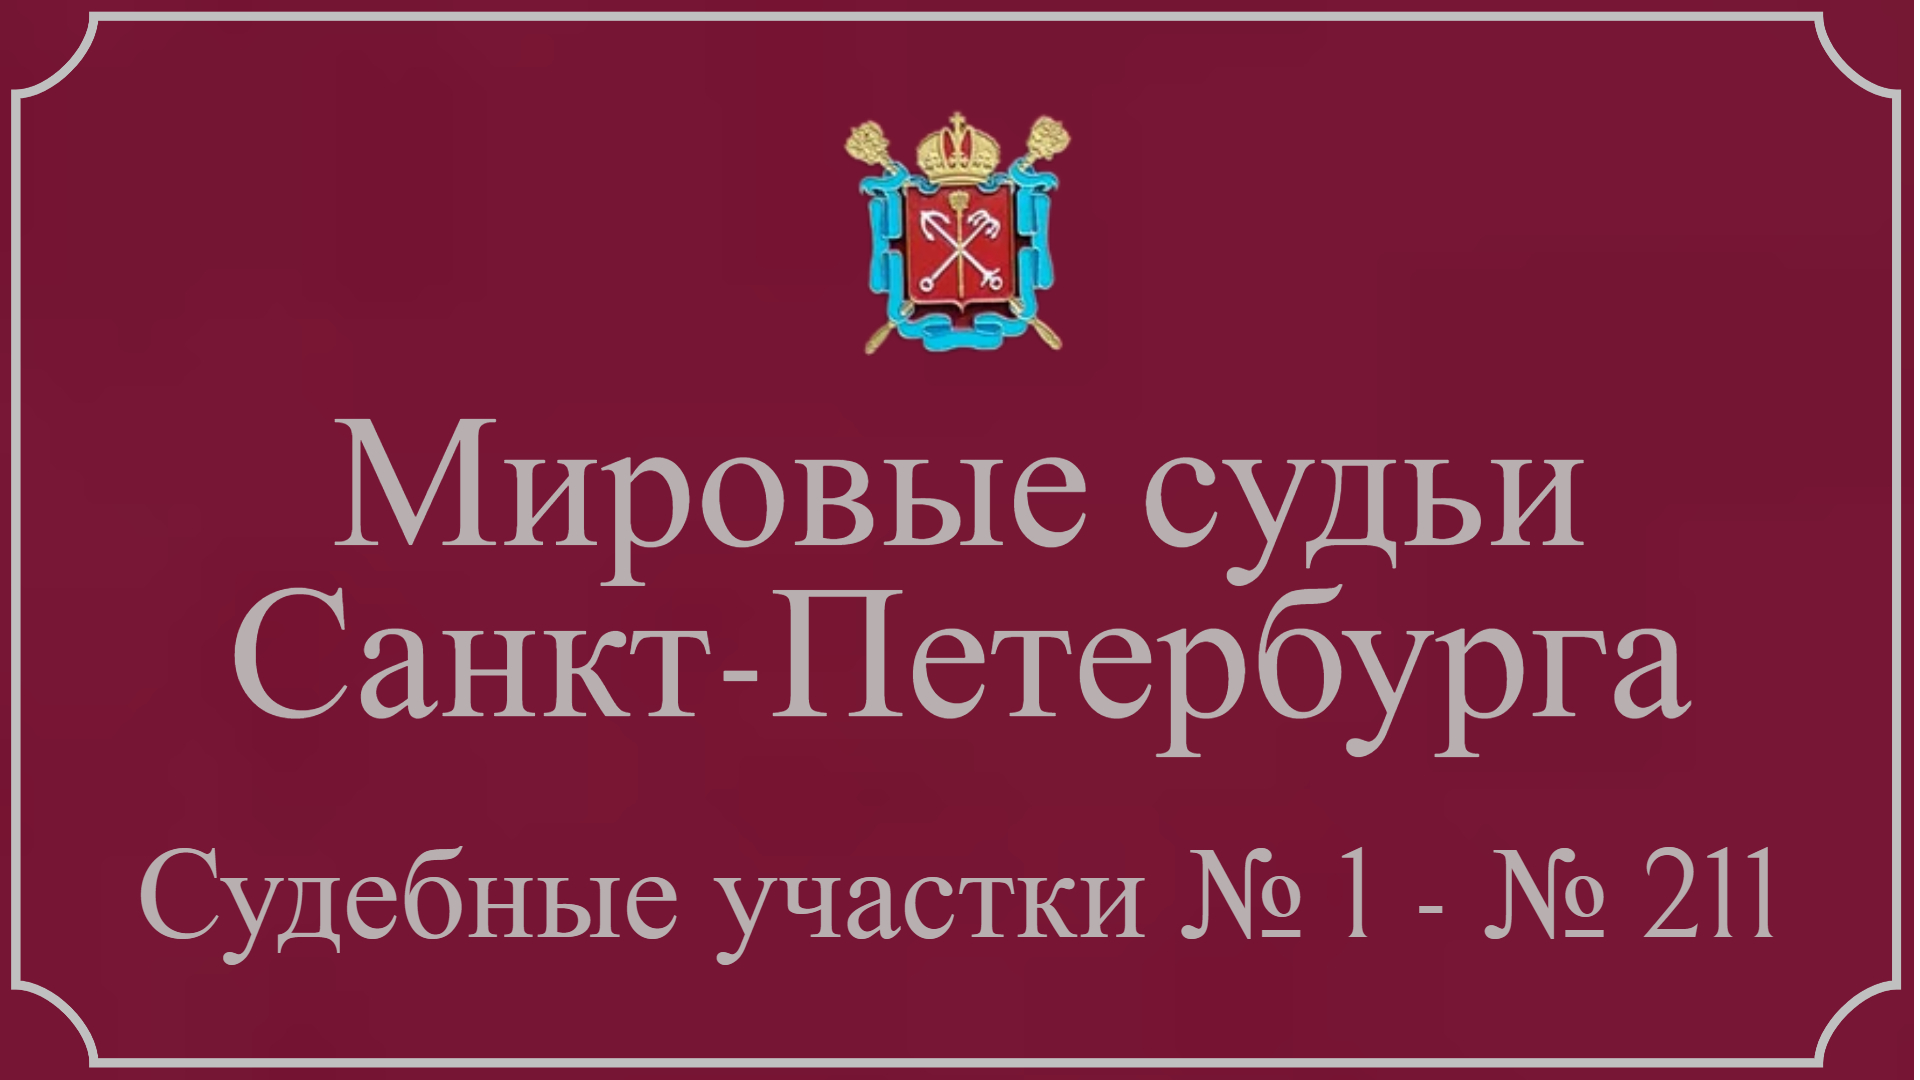 Информация по 211 судебным участкам в Санкт-Петербурге.